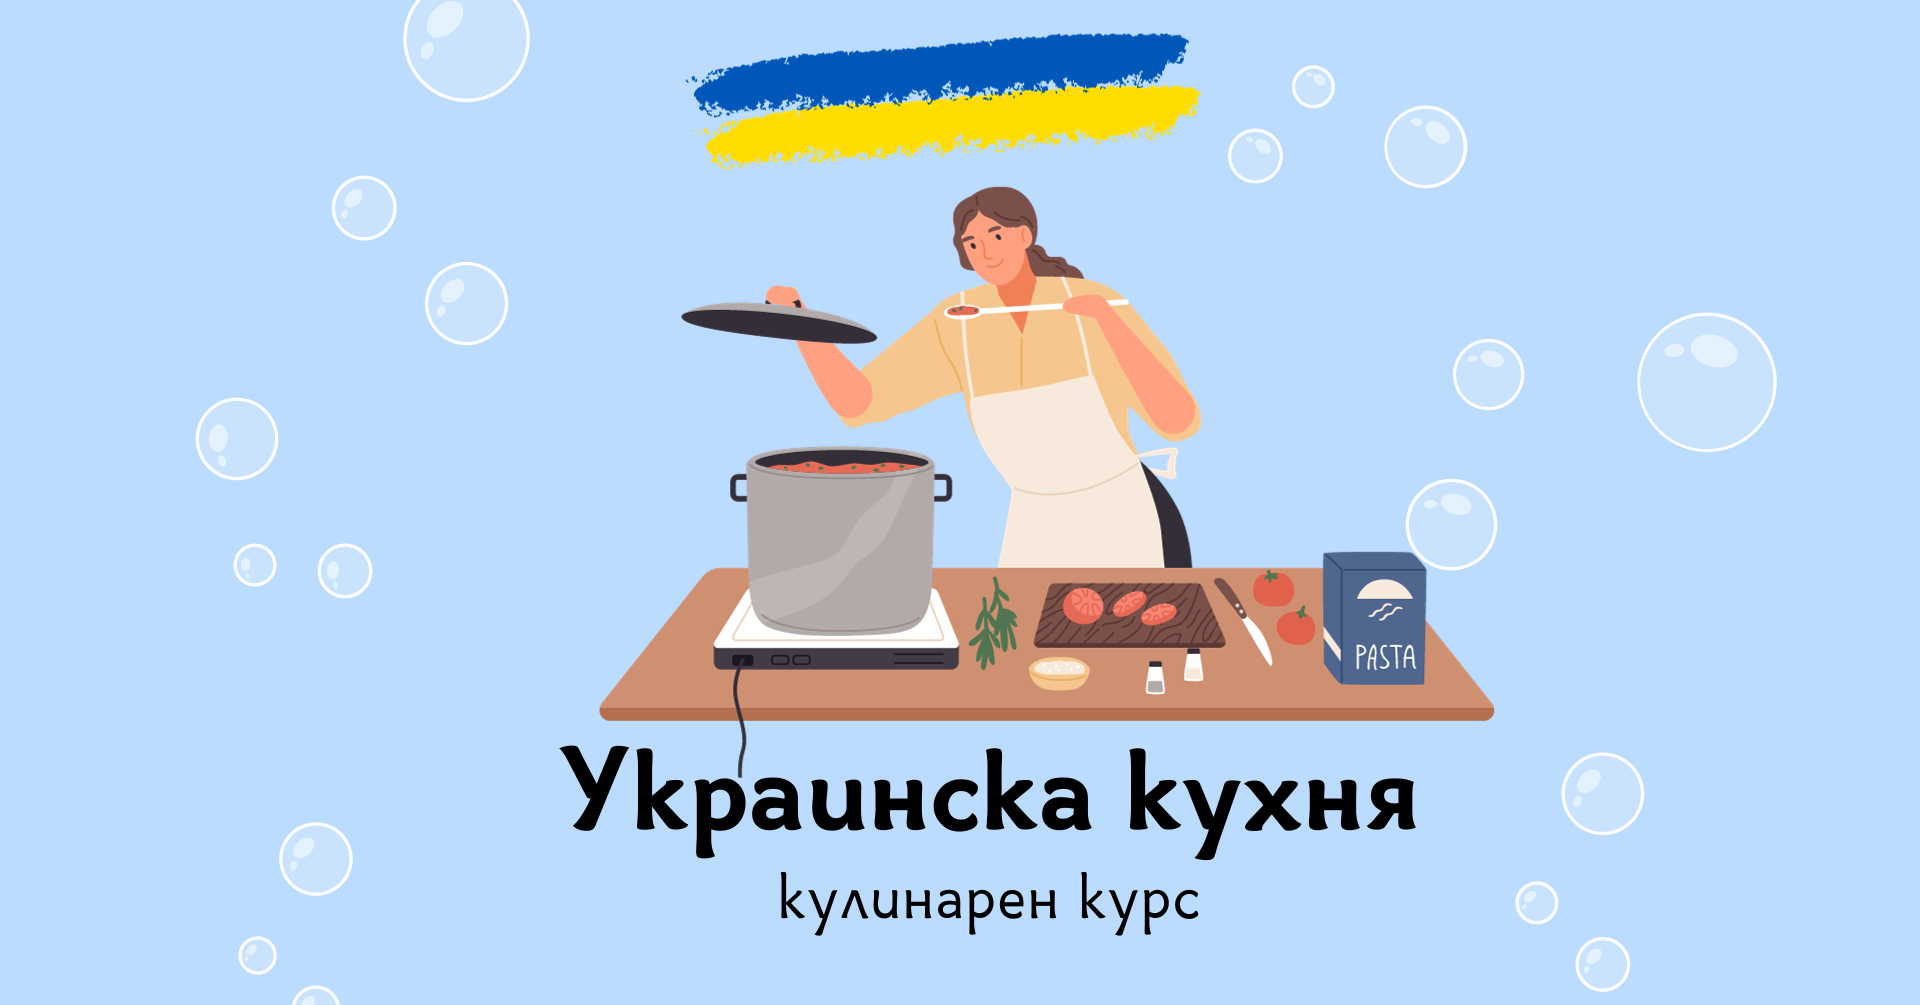 Покана за украински кулинарен курс